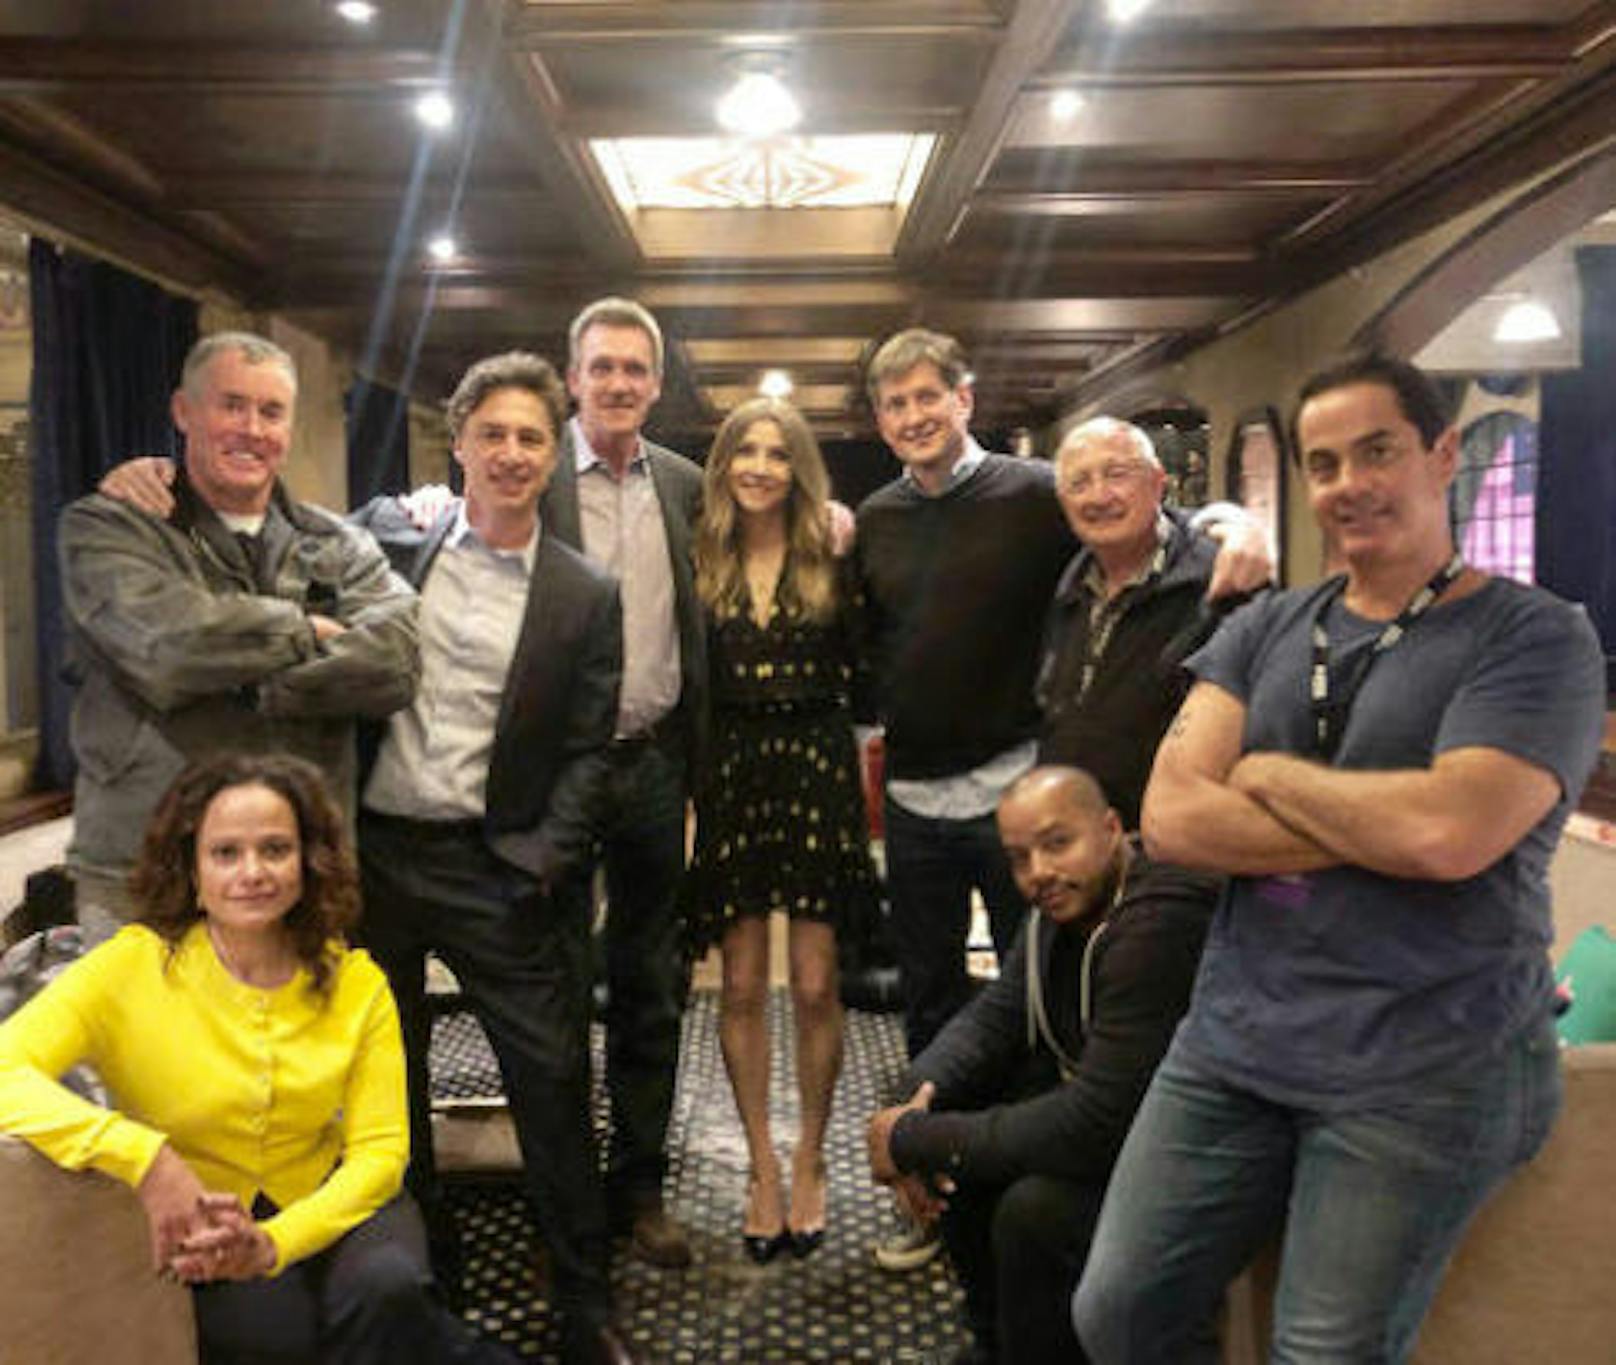 18.11.2018: Die Stars von "Scrubs" feierten Reunion. Das erste offizielle Gruppenbild des Hauptcasts seit dem Serienende im Jahr 2010 kommentierte Zach Braff (3. v. li.) mit einer hoffnungsvollen Frage: "Staffel 10?"